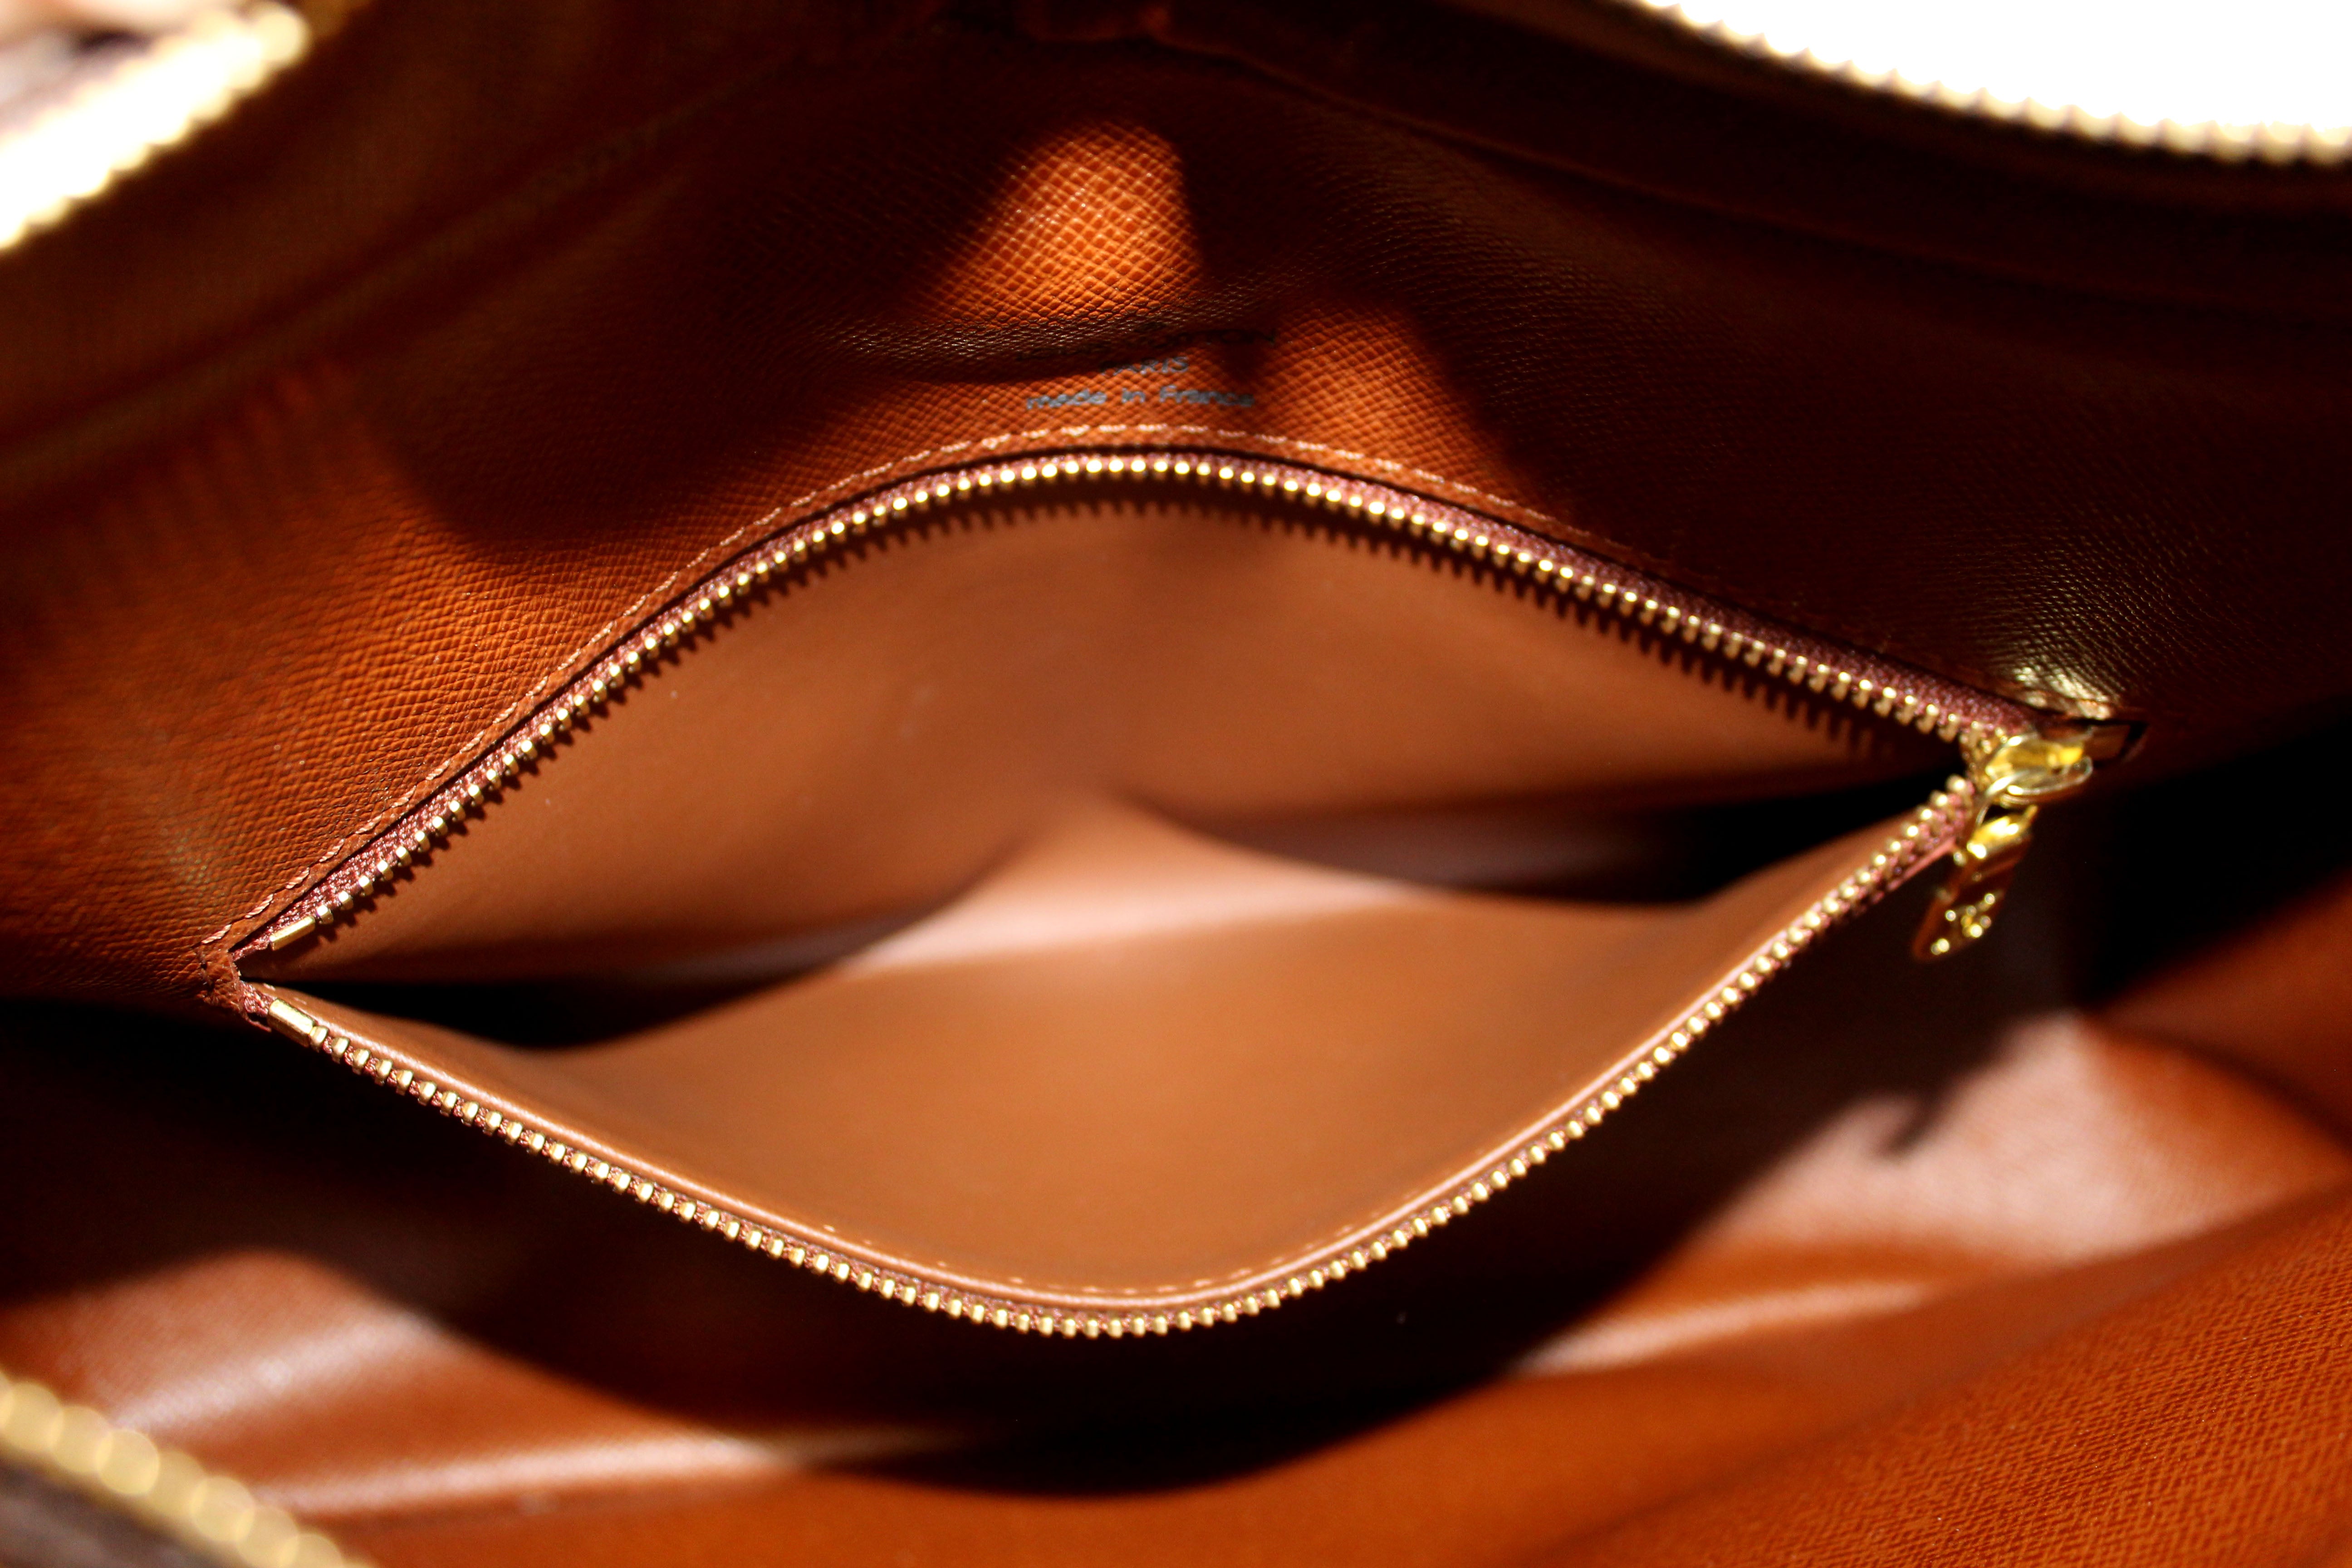 Louis Vuitton Vintage Monogram Courcelles - Brown Shoulder Bags